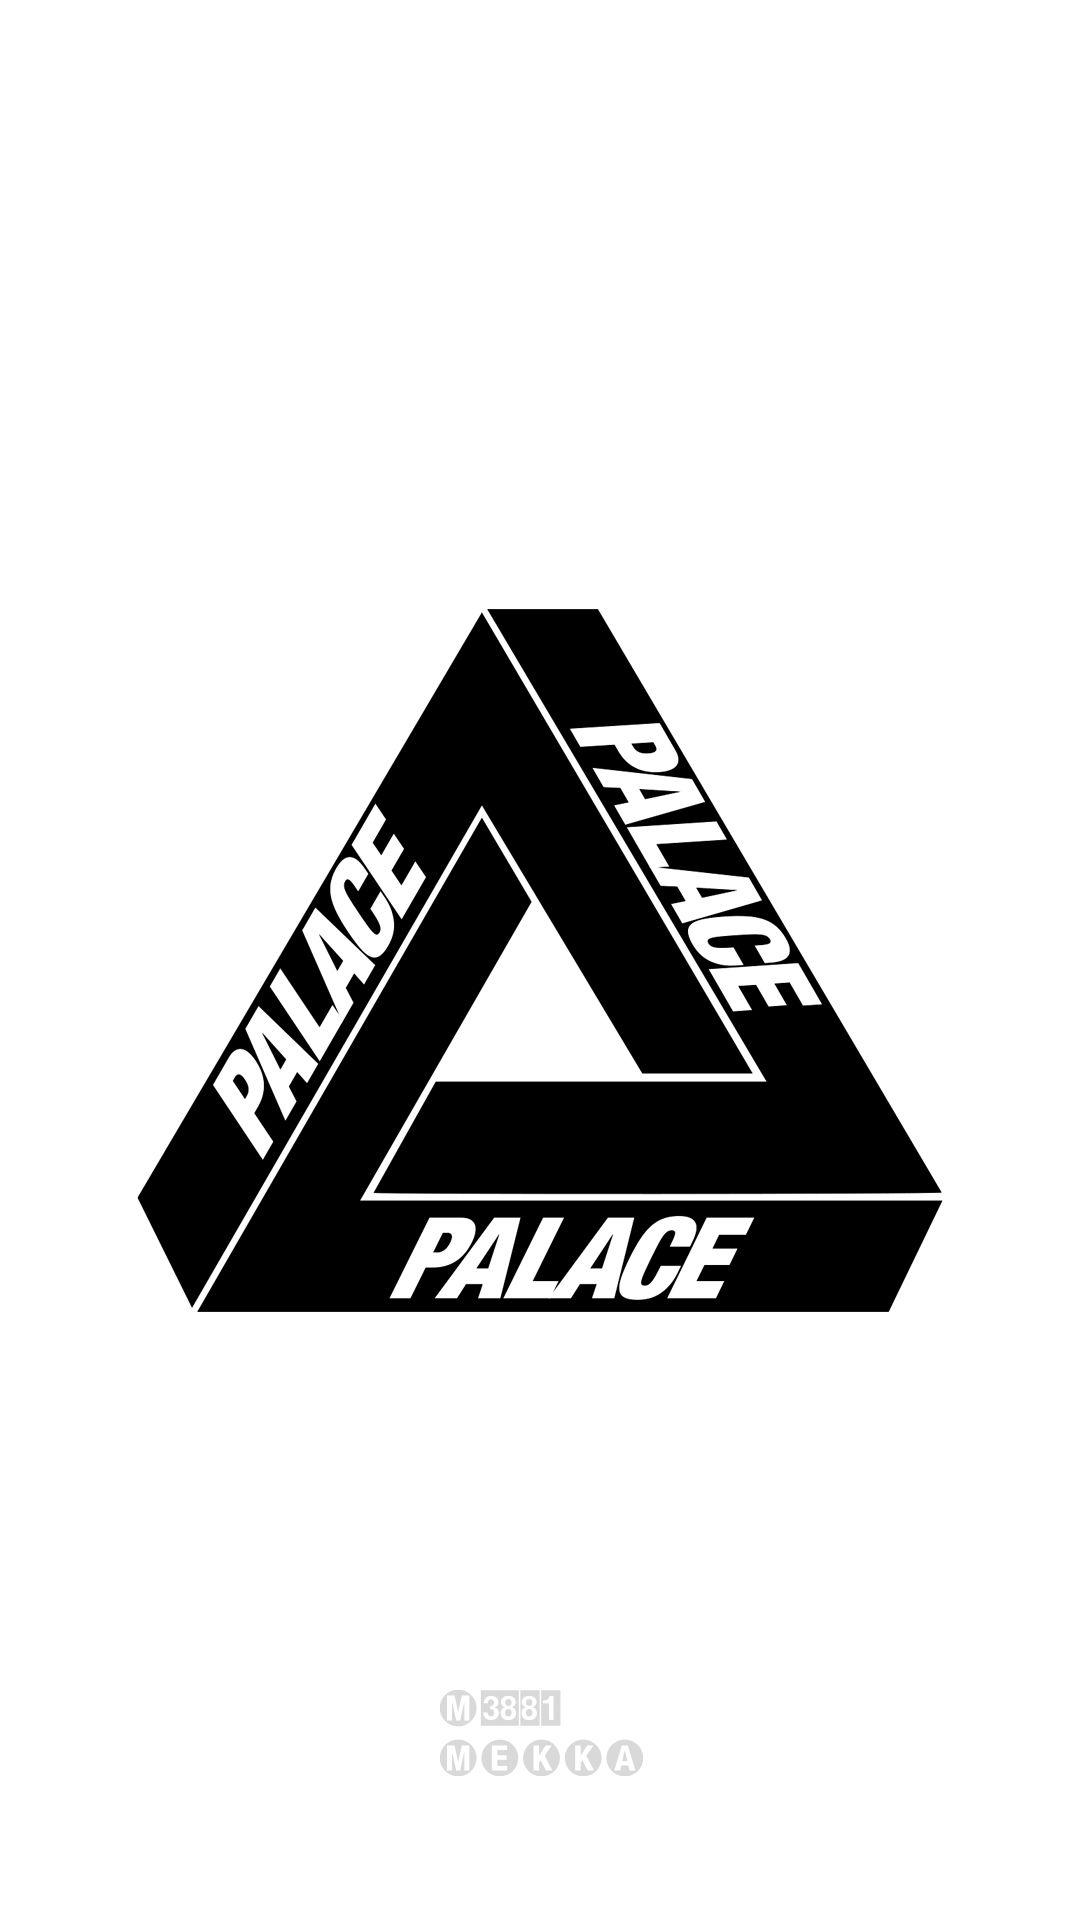 Palace Clothes Logo - Palace Skateboards [M] – MEKKA GALLERY